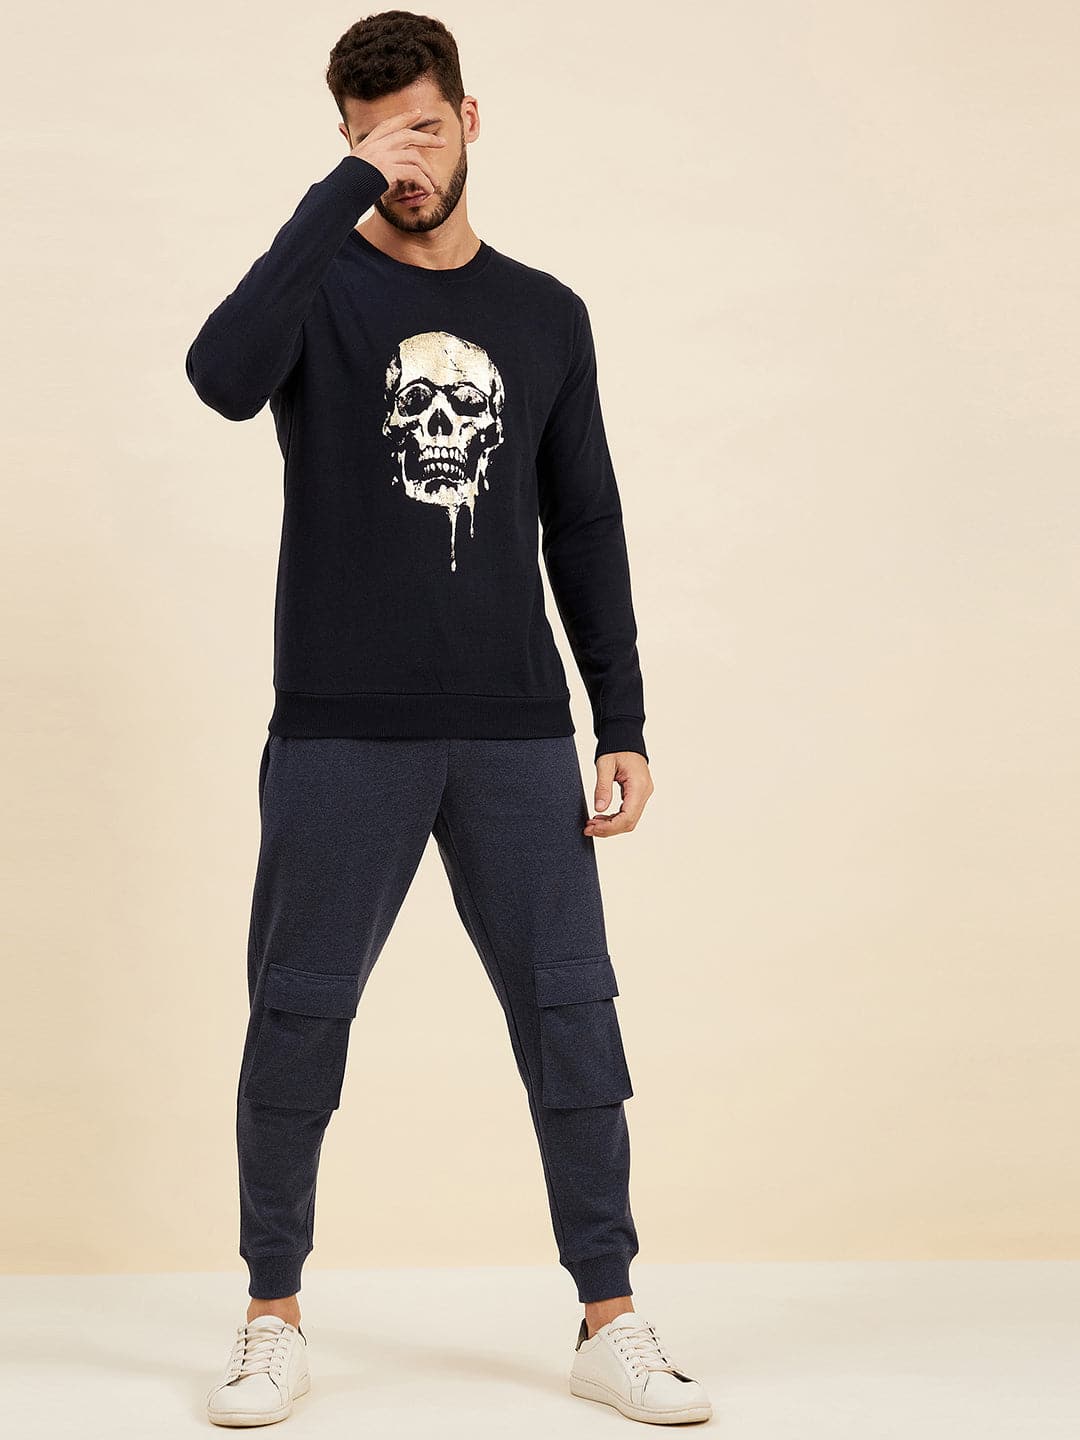 Men's Navy Front Foil Skull Print Sweatshirt - LYUSH-MASCLN